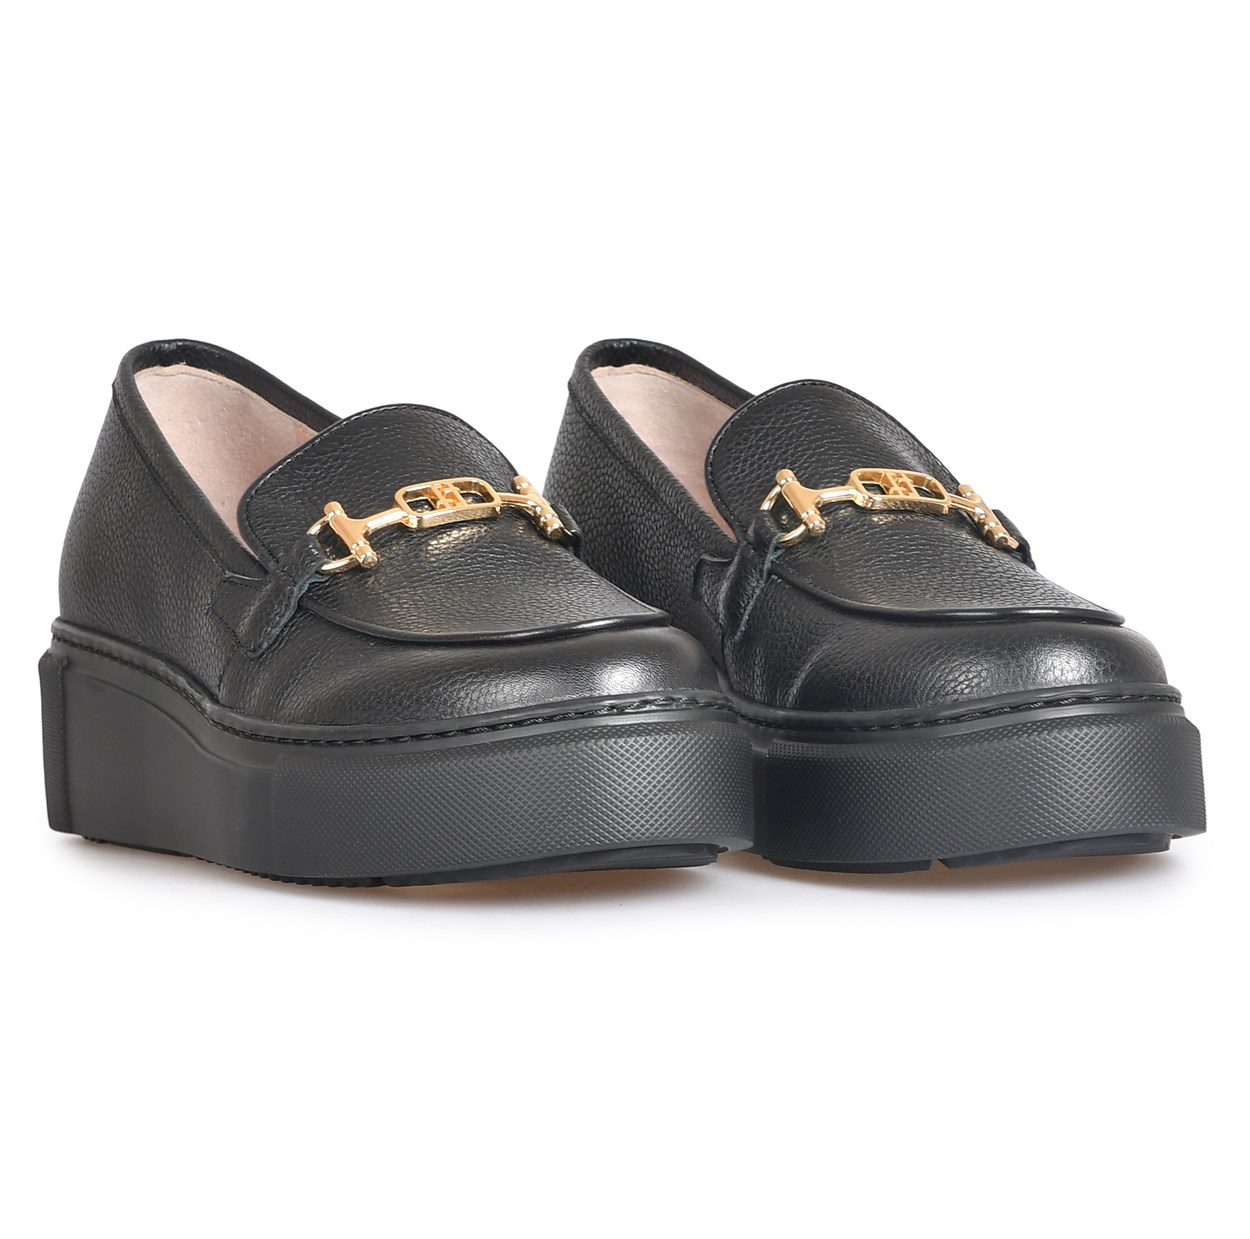 Siyah Deri Toka Detaylı Kadın Günlük Ayakkabı | Flower Ayakkabı